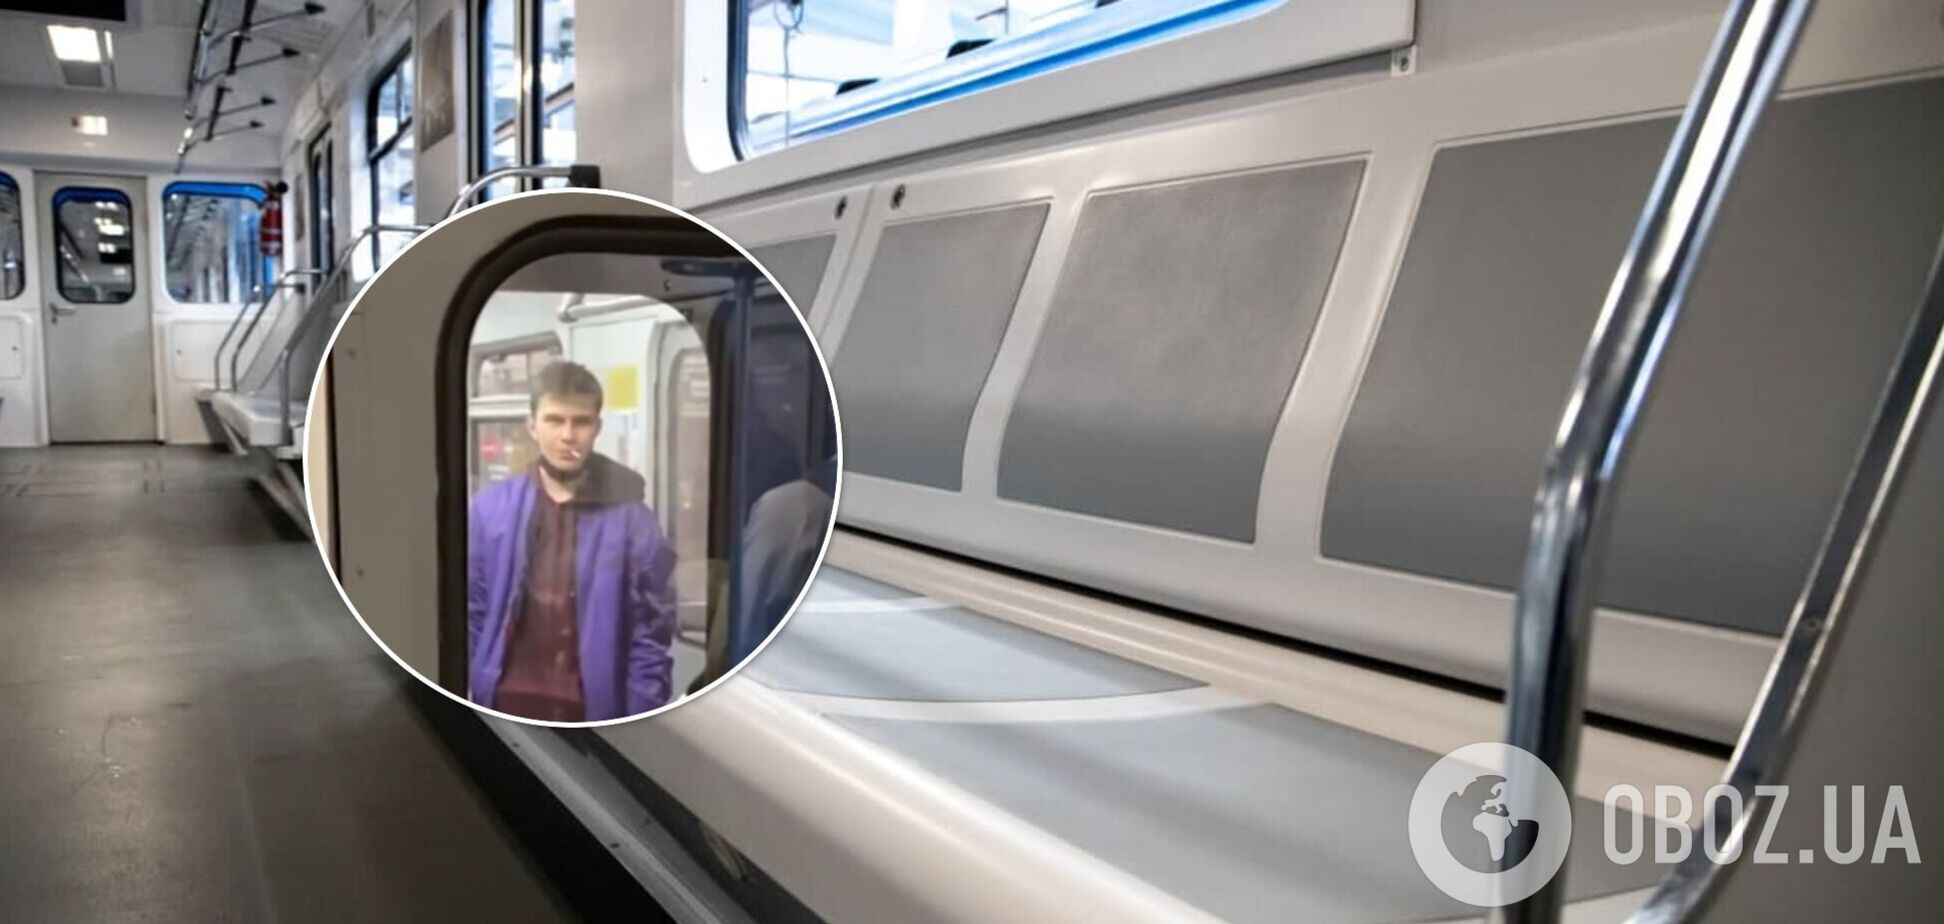 У Києві хлопець курив прямо у вагоні метро. Відео